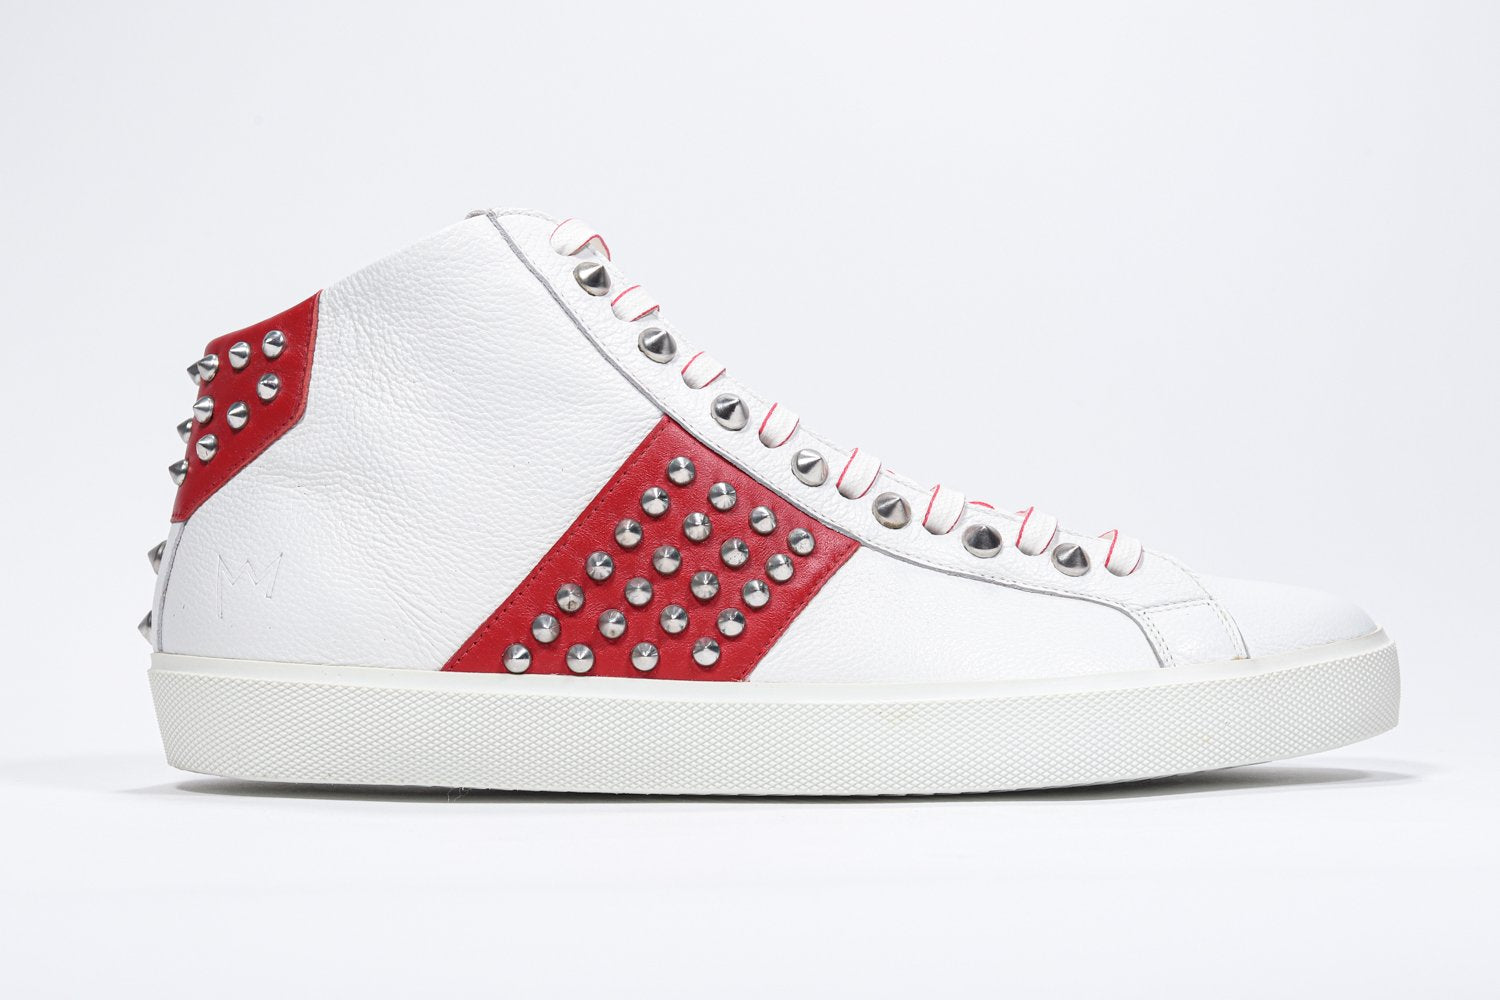 Profil latéral d'un modèle intermédiaire blanc et rouge sneaker. Tige en cuir avec clous, fermeture à glissière intérieure et semelle en caoutchouc blanc.